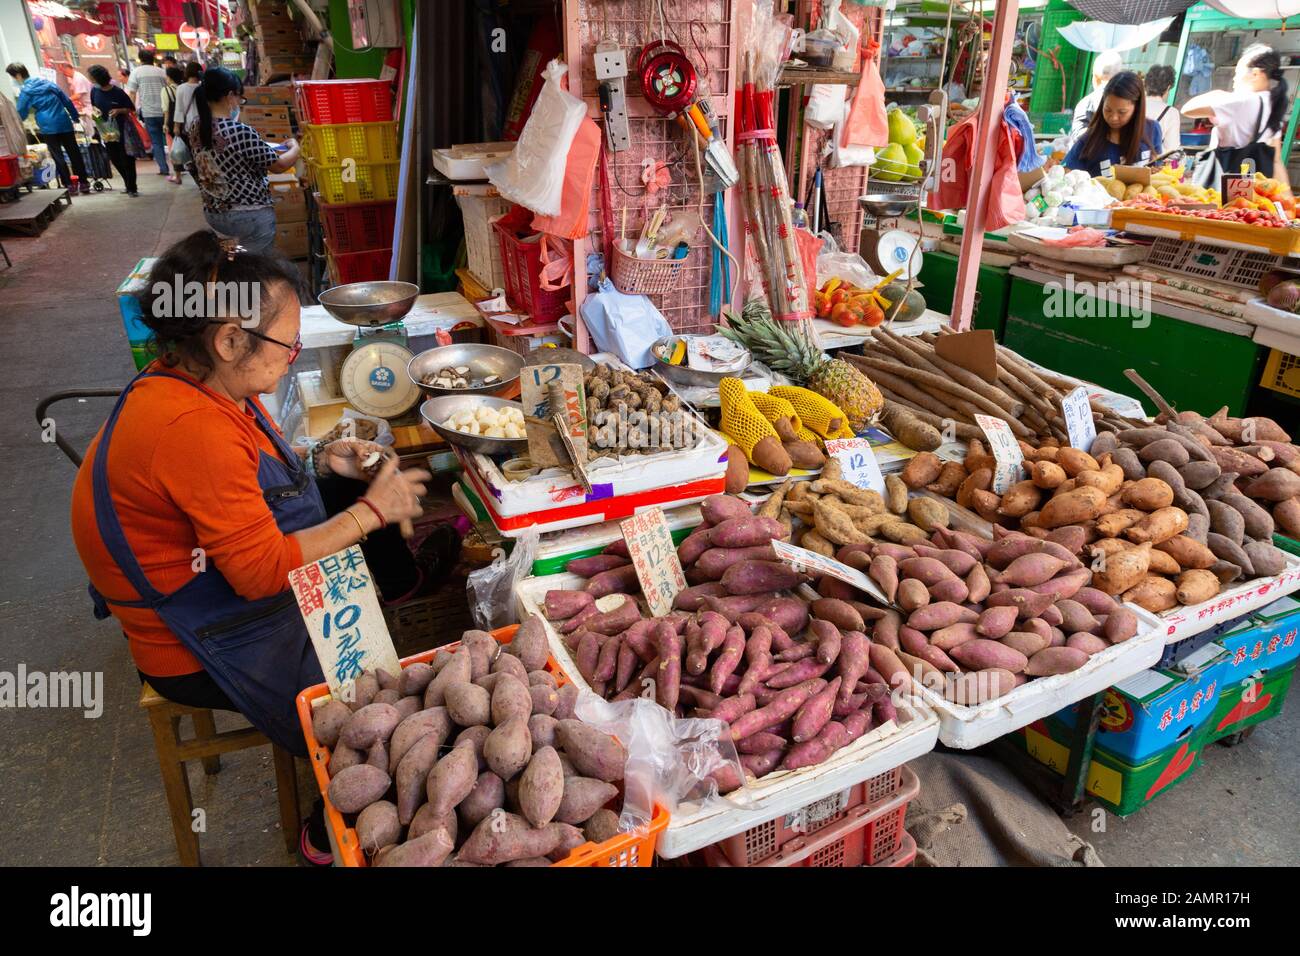 Une femme négociant de marché ou vendeur travaillant dans son étalage vendant des légumes racines pour la nourriture, Bowring Street Market, Kowloon Hong Kong Asie Banque D'Images